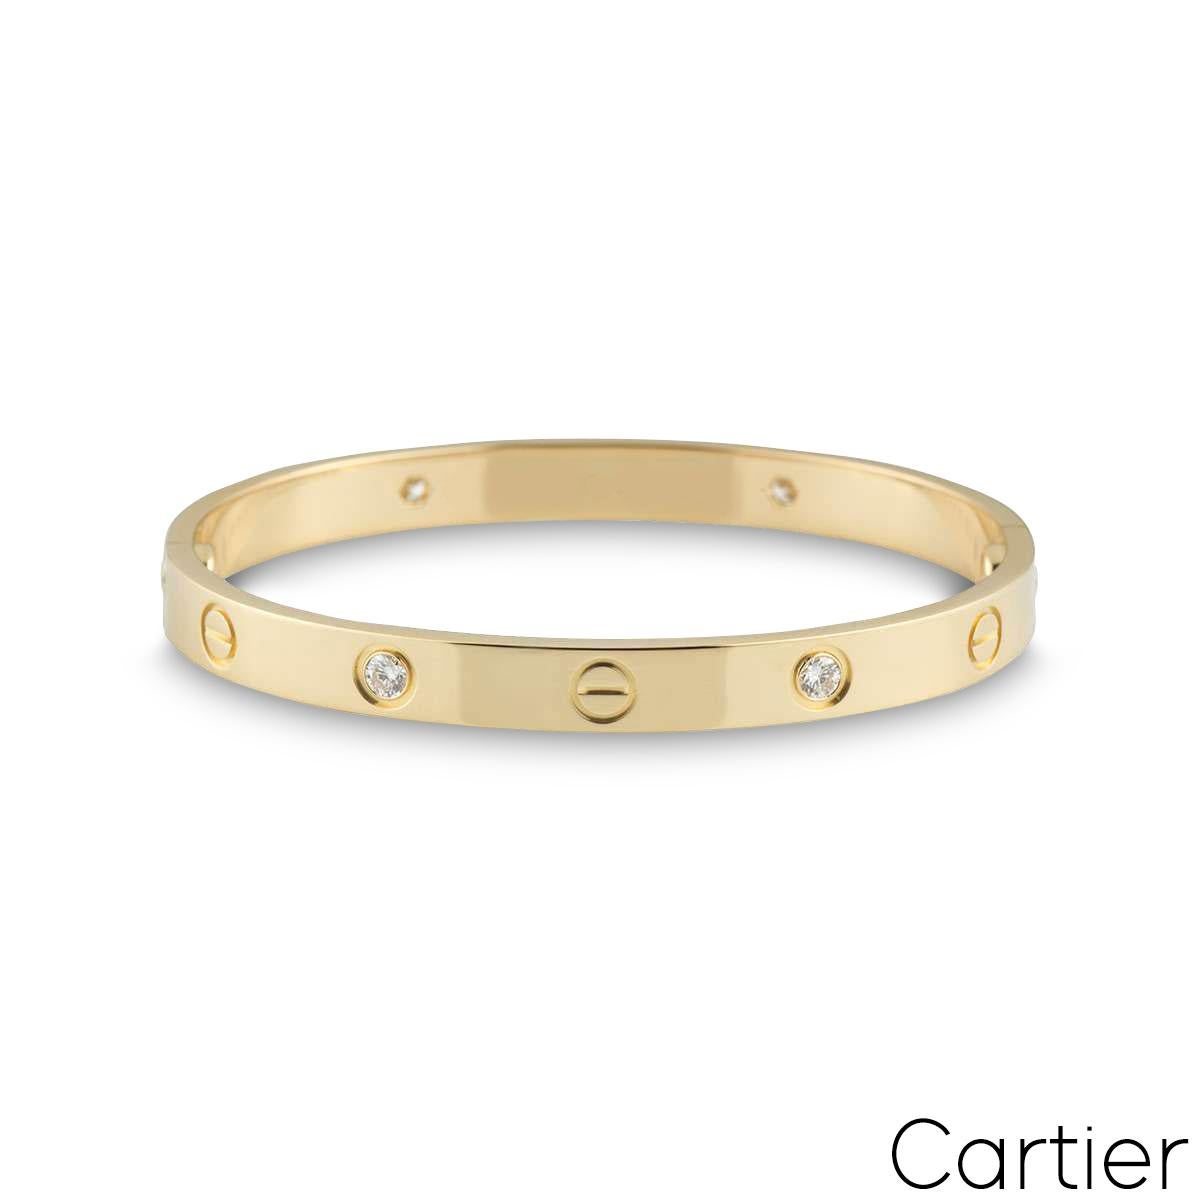 Un bracelet demi diamant en or jaune 18k de Cartier de la collection Love. Le bracelet comprend des motifs à vis alternant avec quatre diamants ronds de taille brillant en serti clos sur le bord extérieur du bracelet, pour un poids de 0,42ct. Le